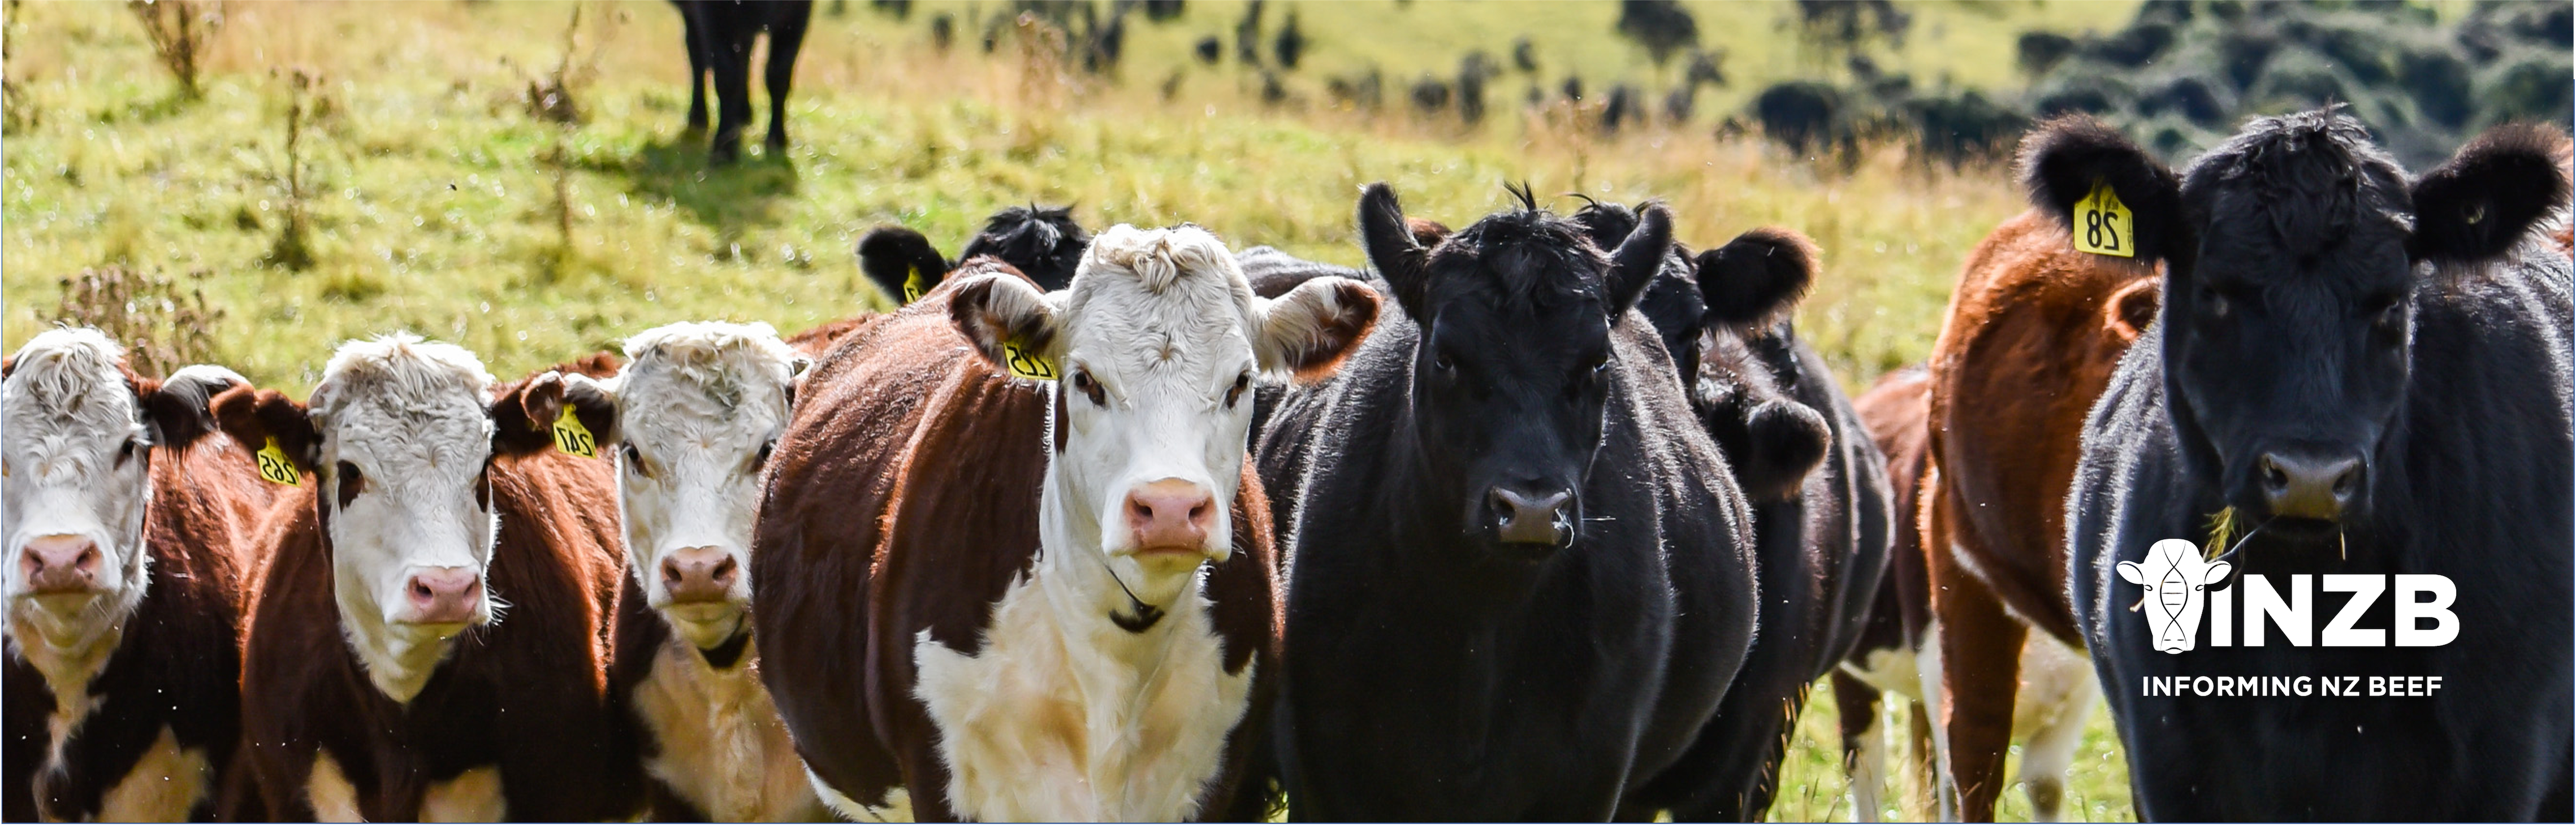 Informing New Zealand Beef extension activities in full swing 